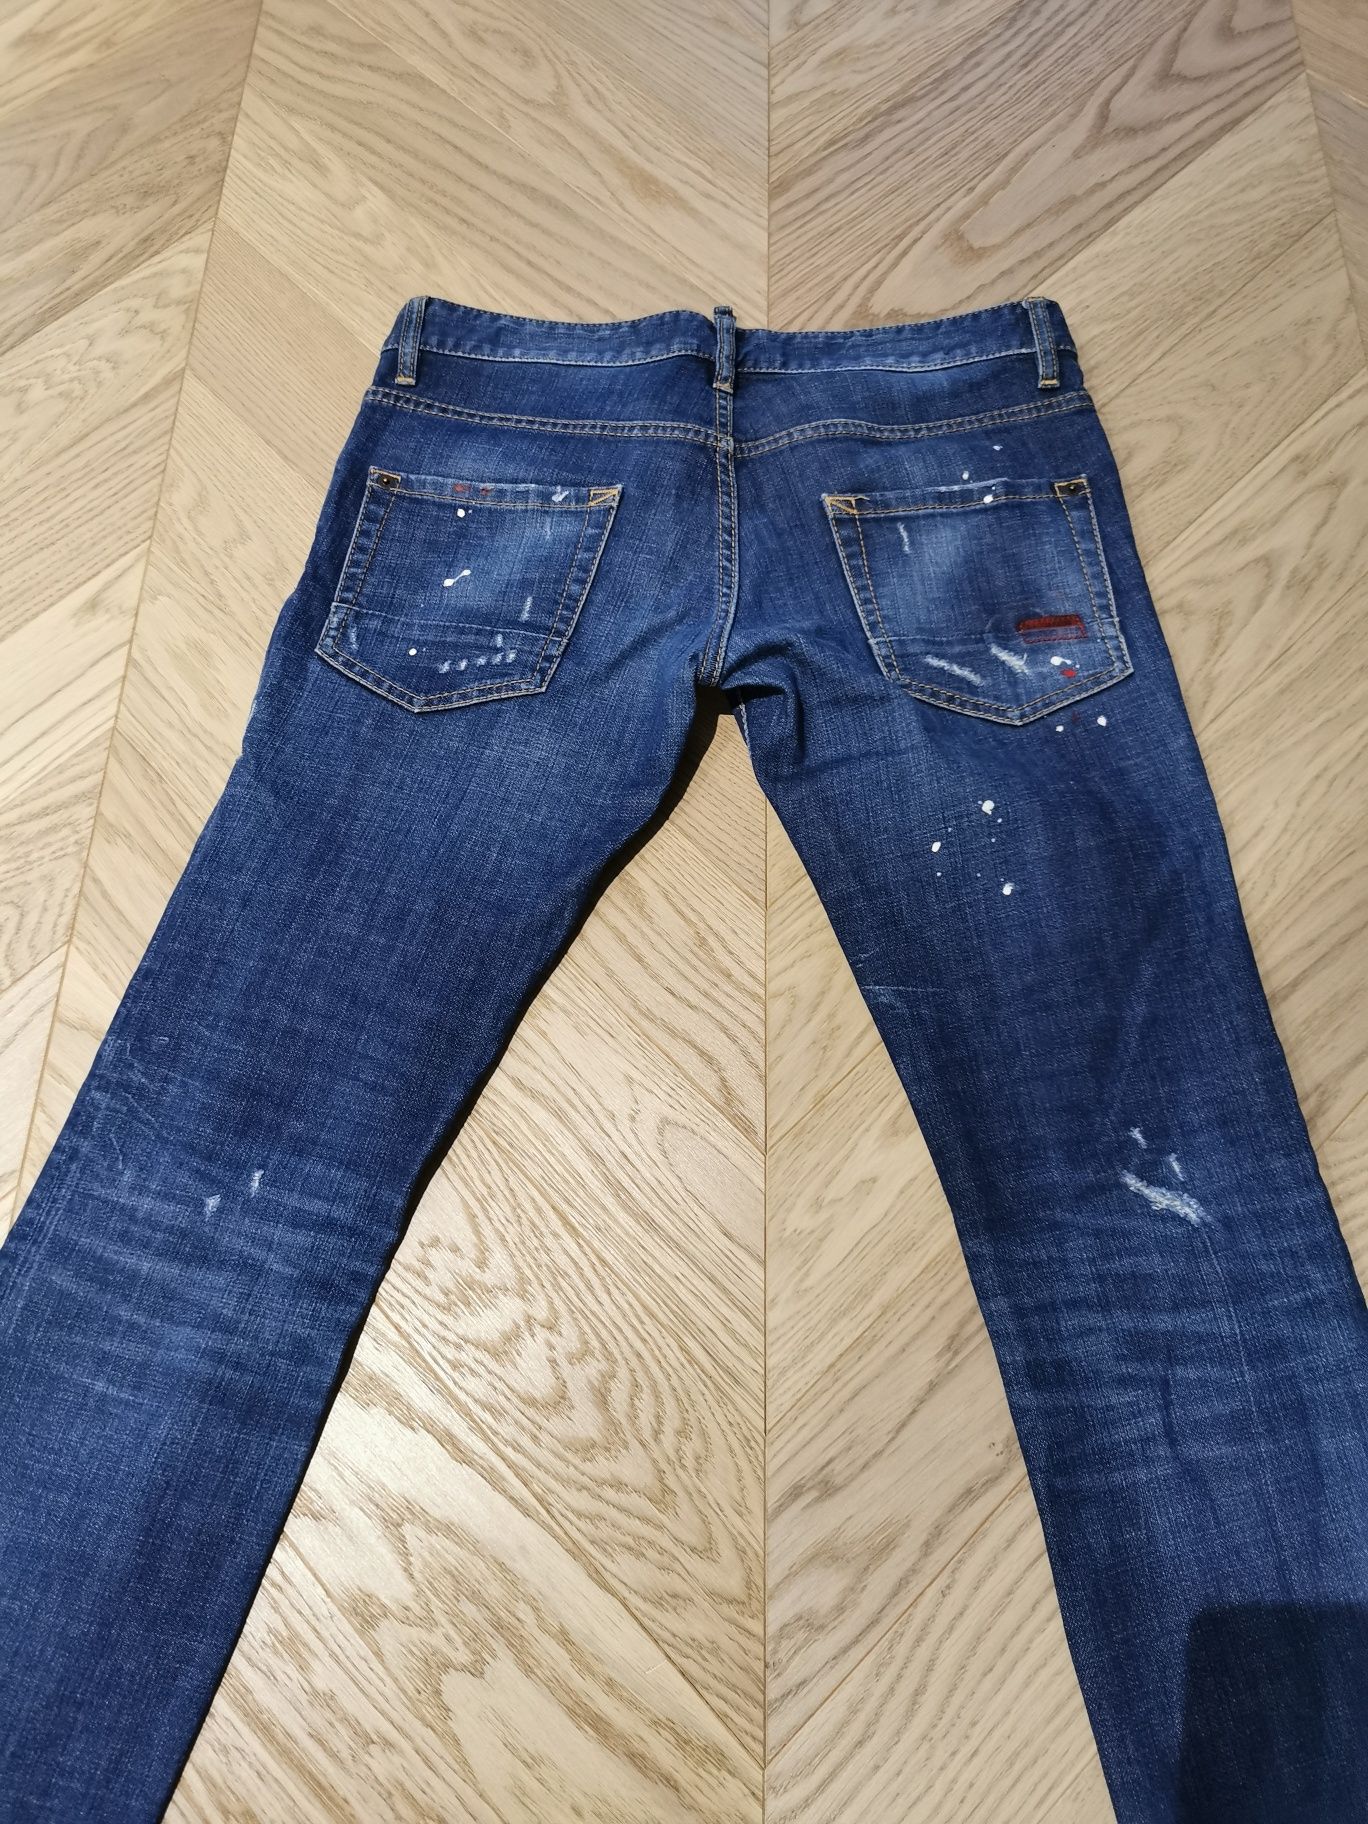 Desquared2  Spodnie Jeans - Jak Nowe